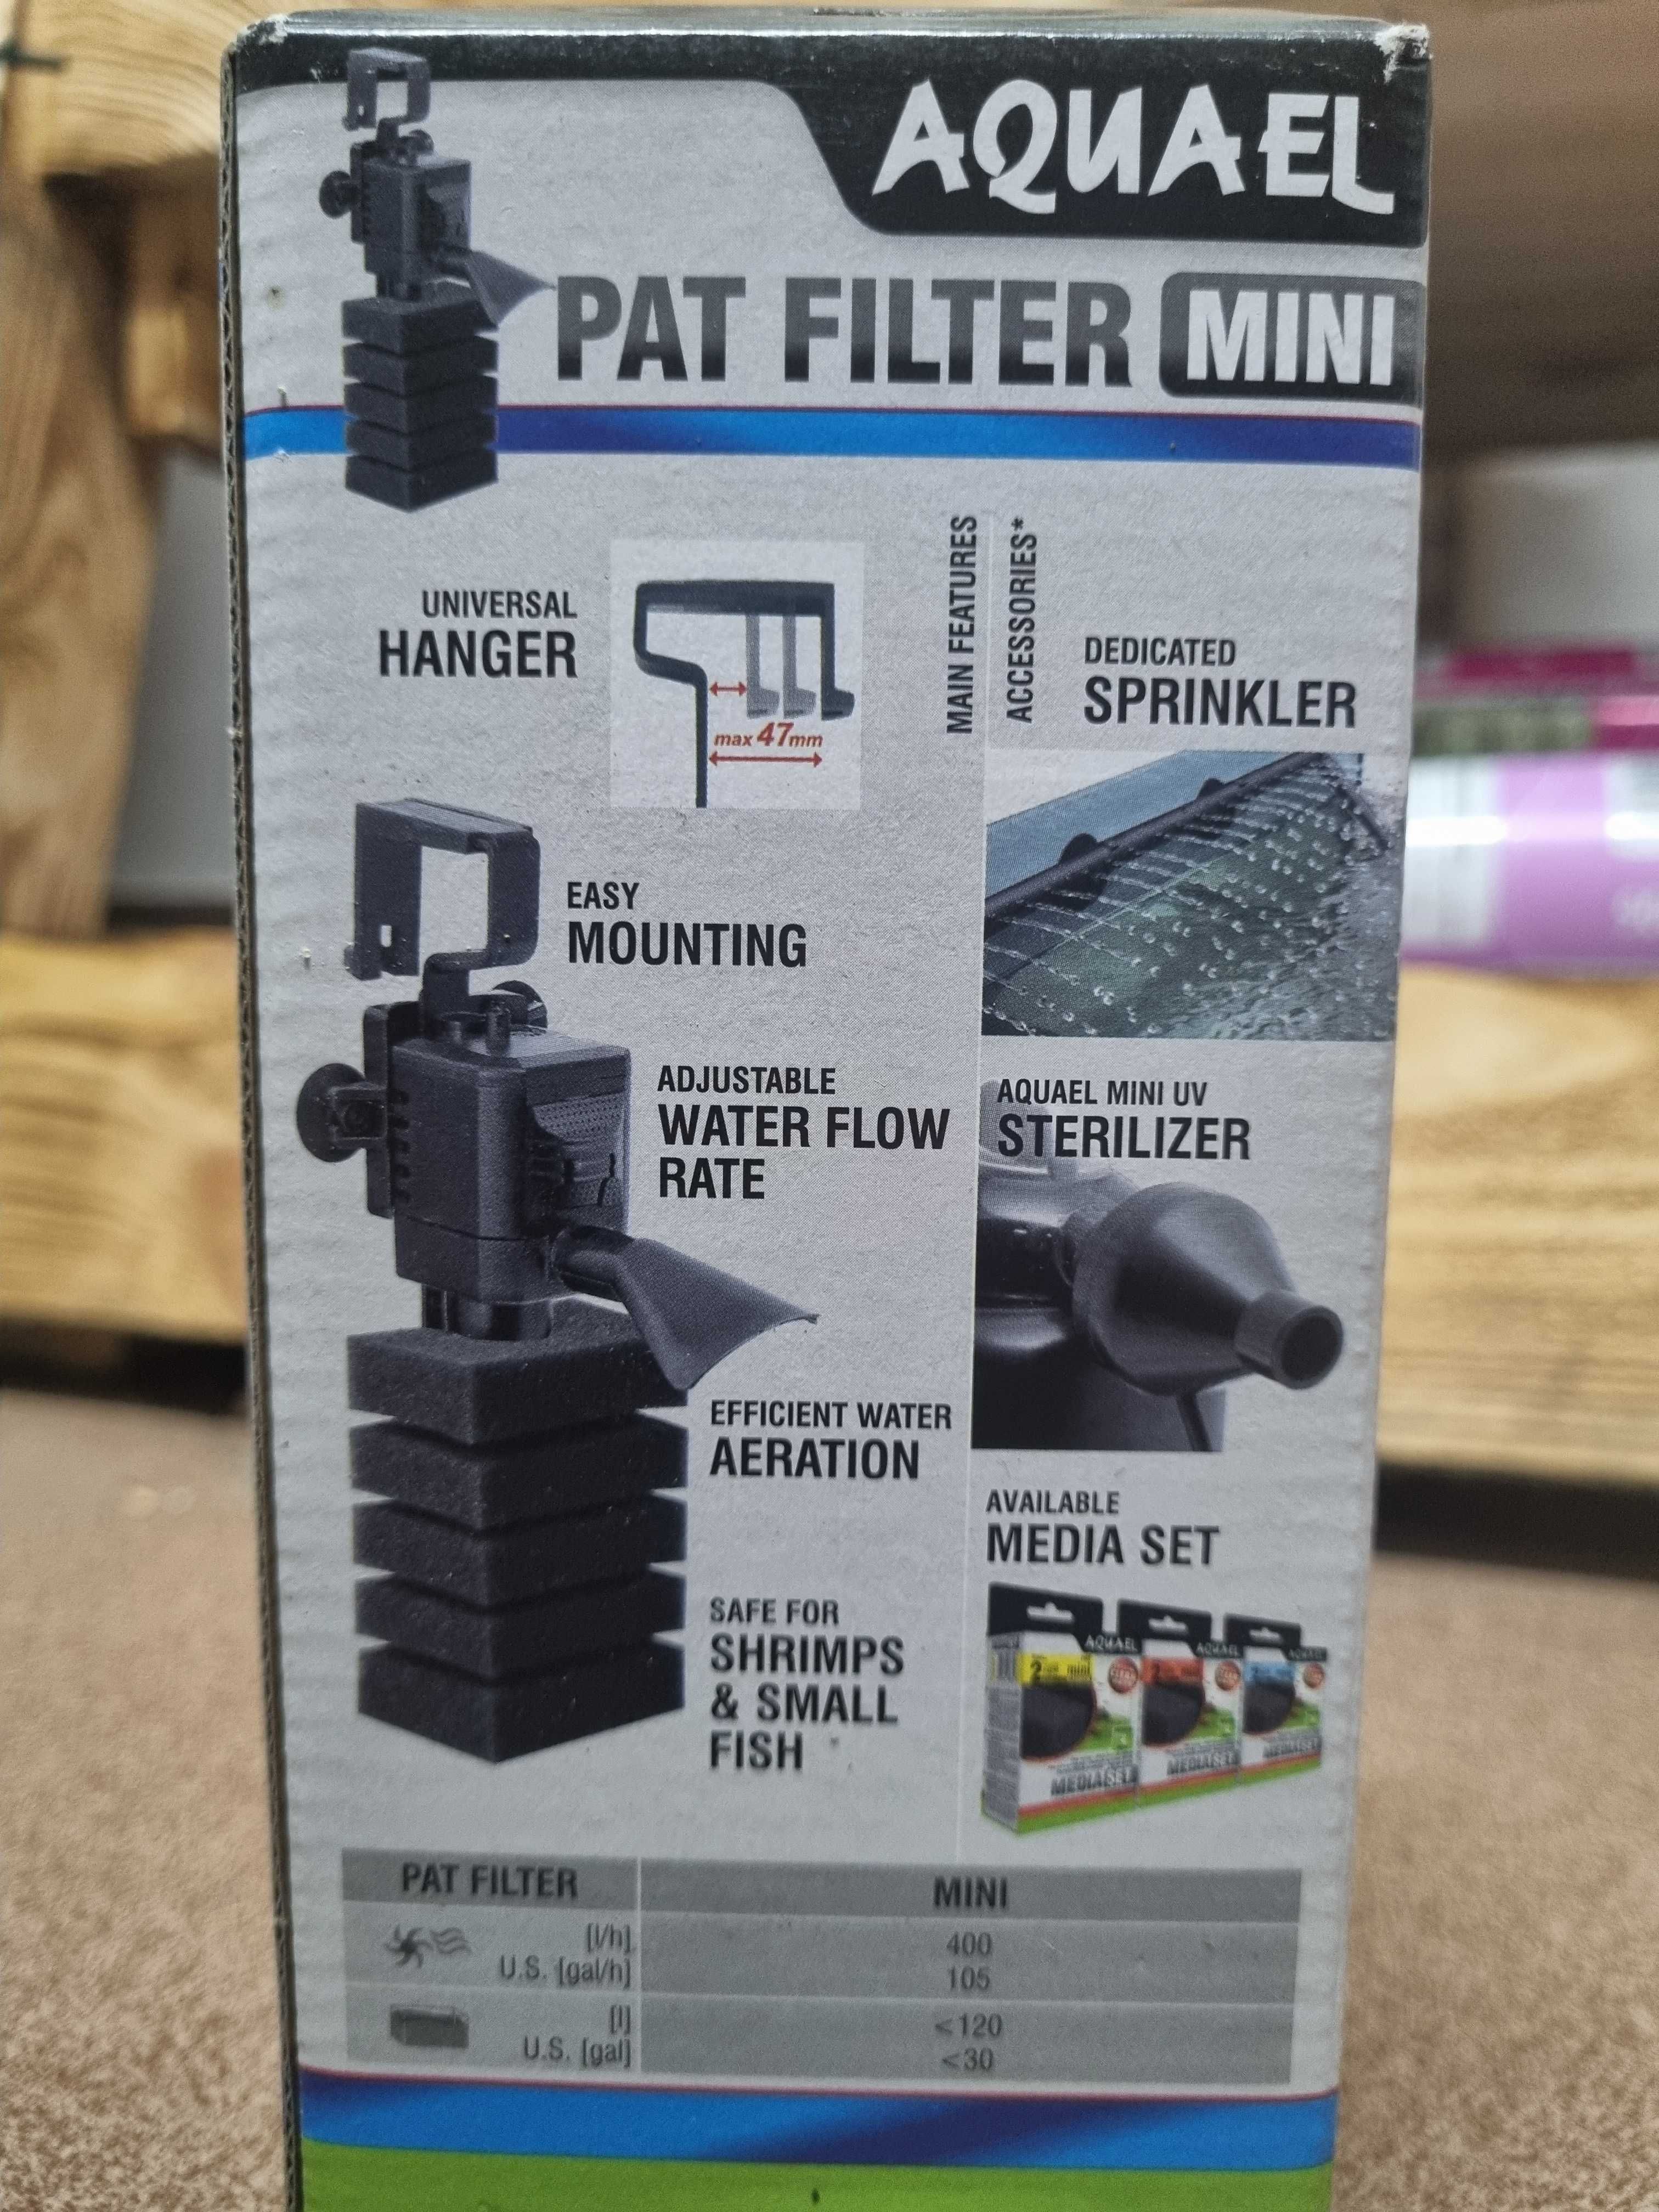 AQUAEL Pat Filter Mini